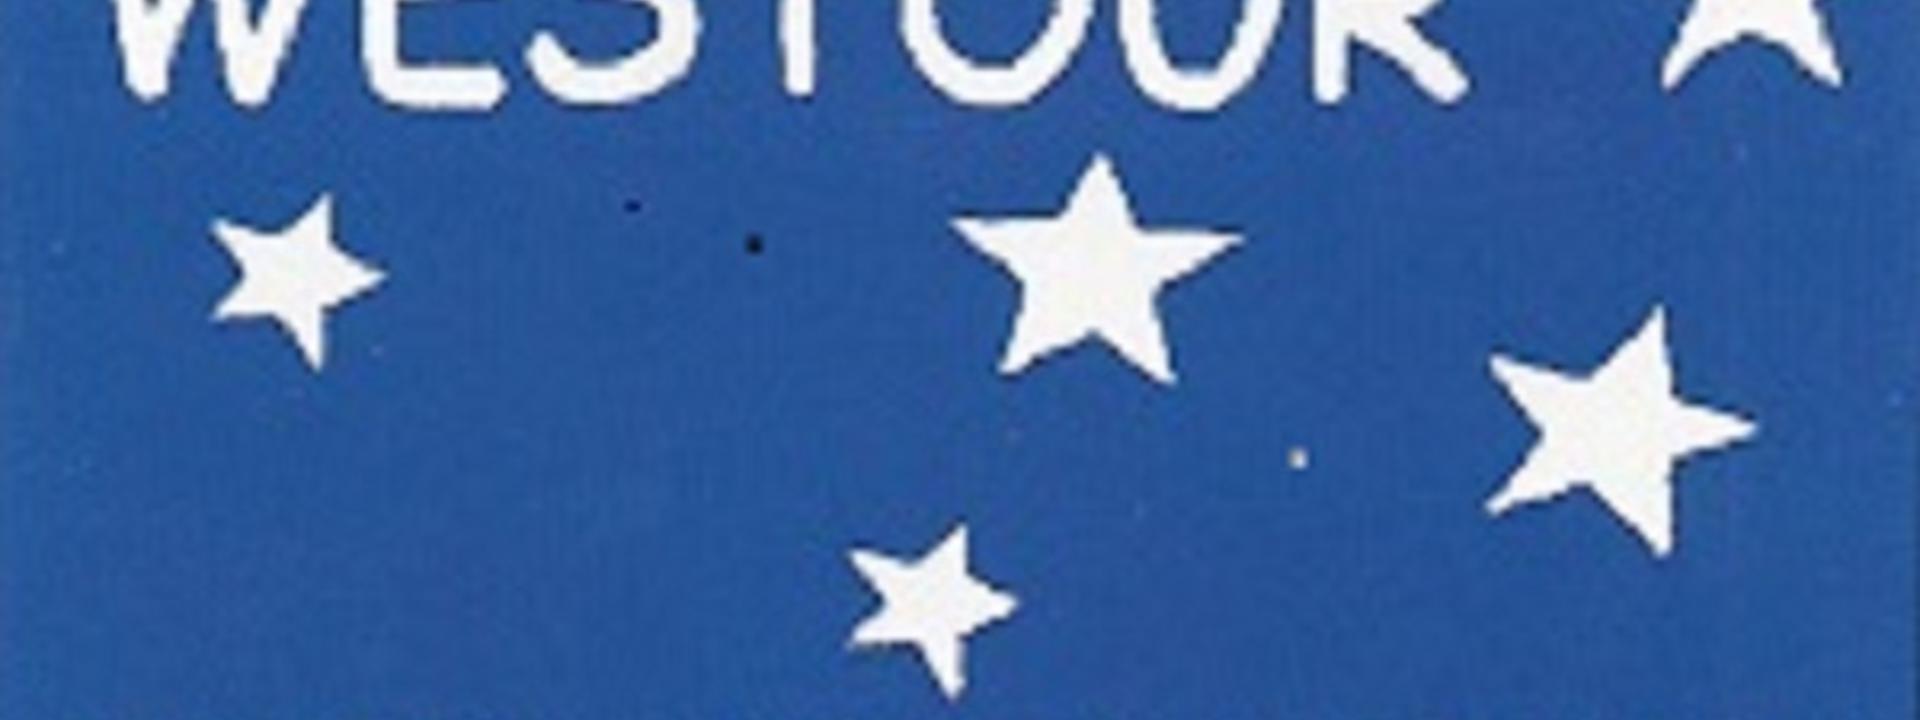 Logo Westour